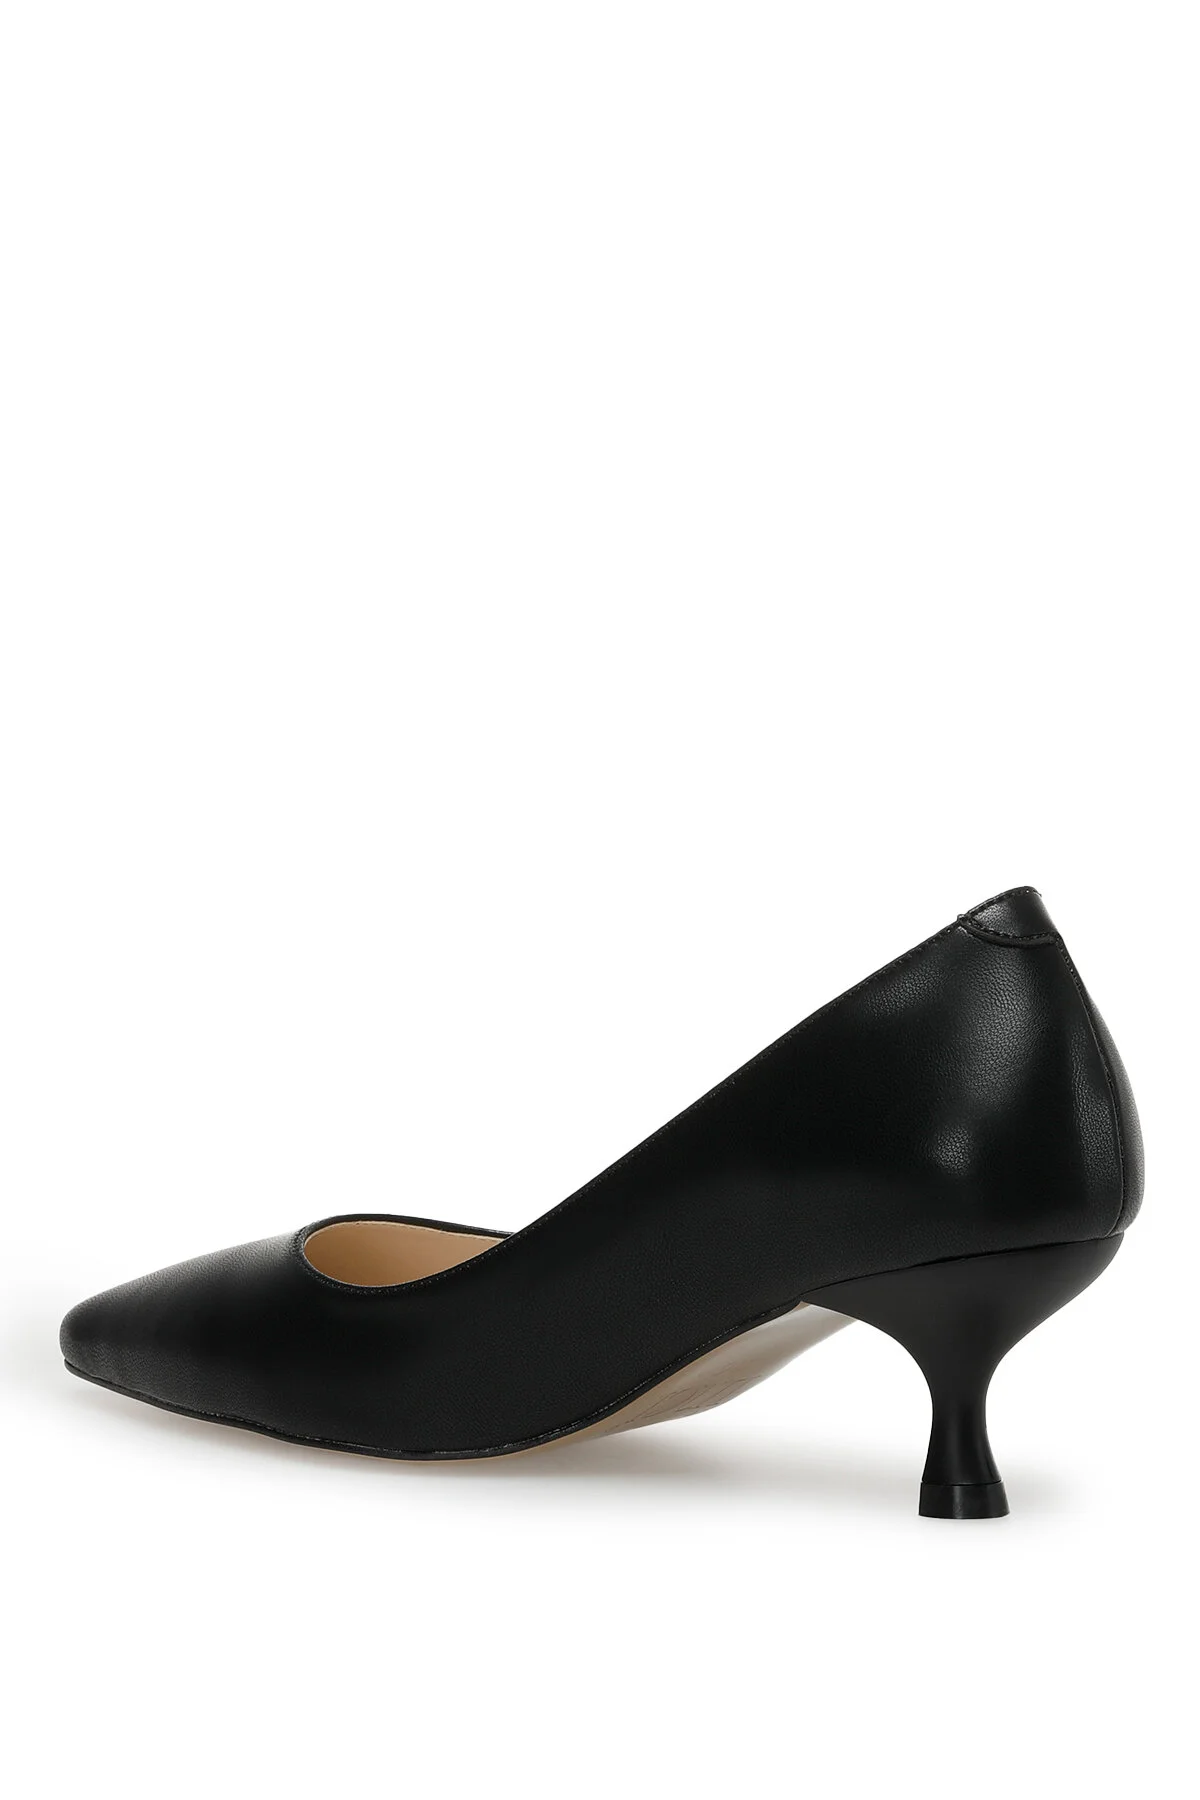 TRUDY 3FX Kadın Topuklu Ayakkabı-Siyah - Thumbnail